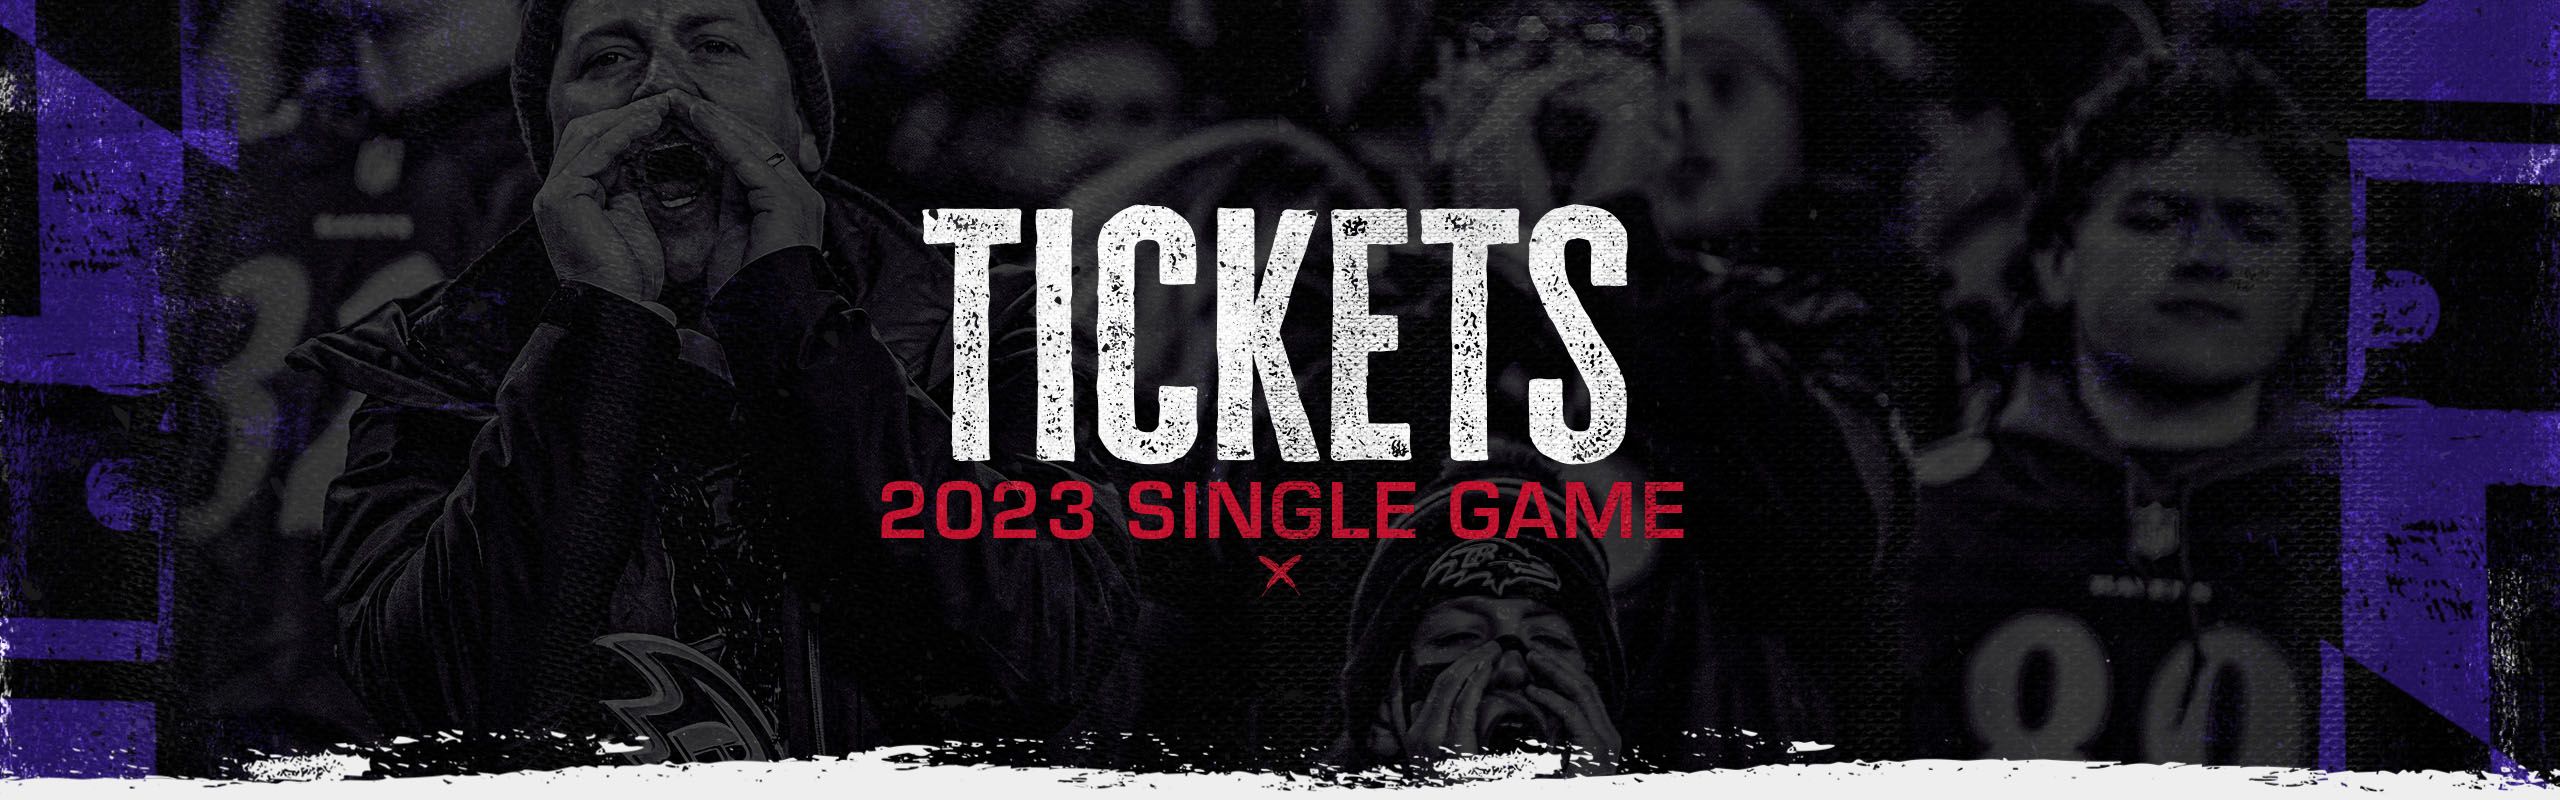 Ravens Single Game Tickets  Baltimore Ravens –